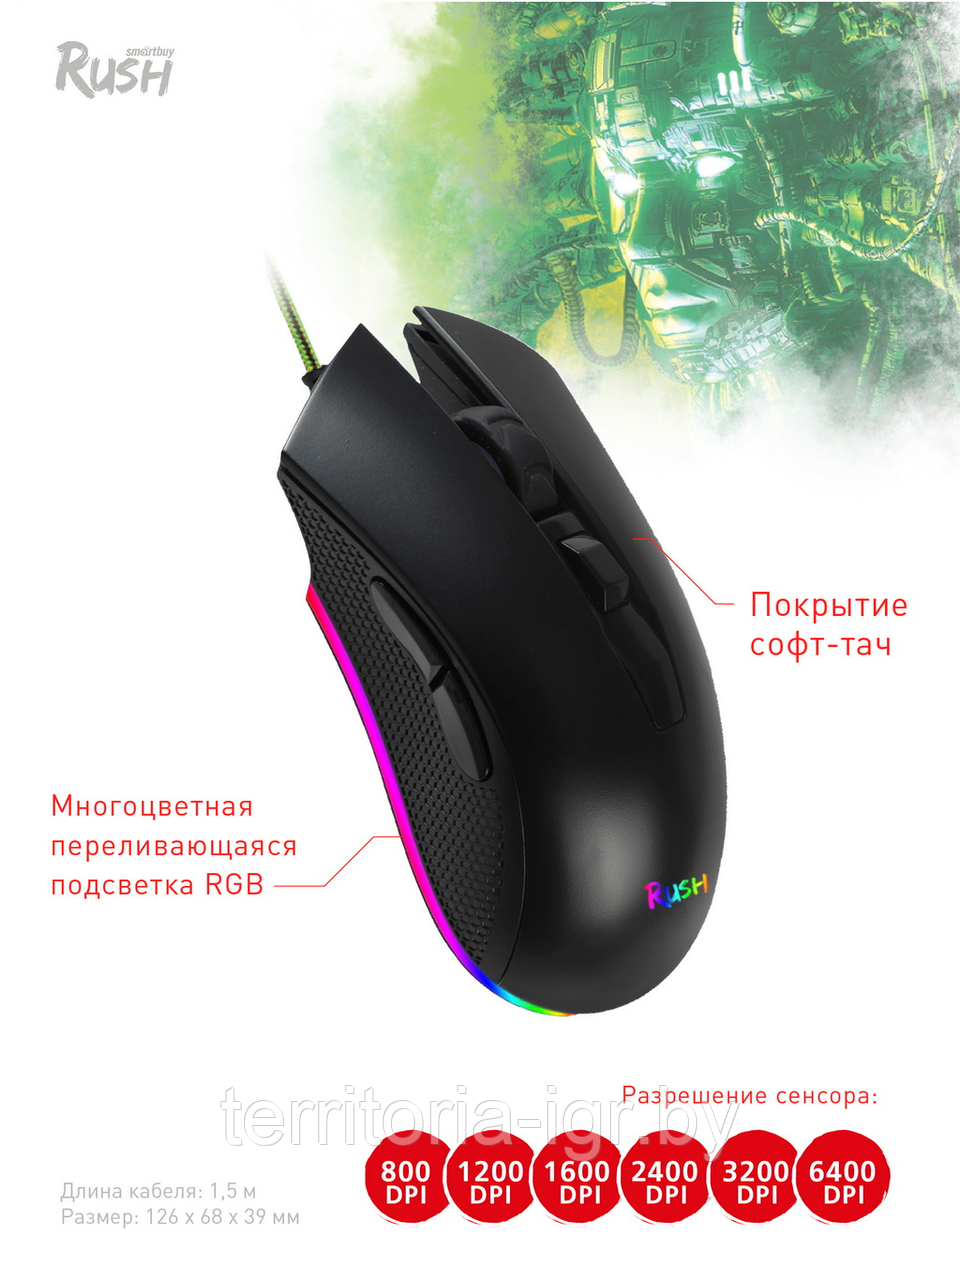 Проводная игровая мышь с RGB Подсветкой Rush Kraken Smartbuy